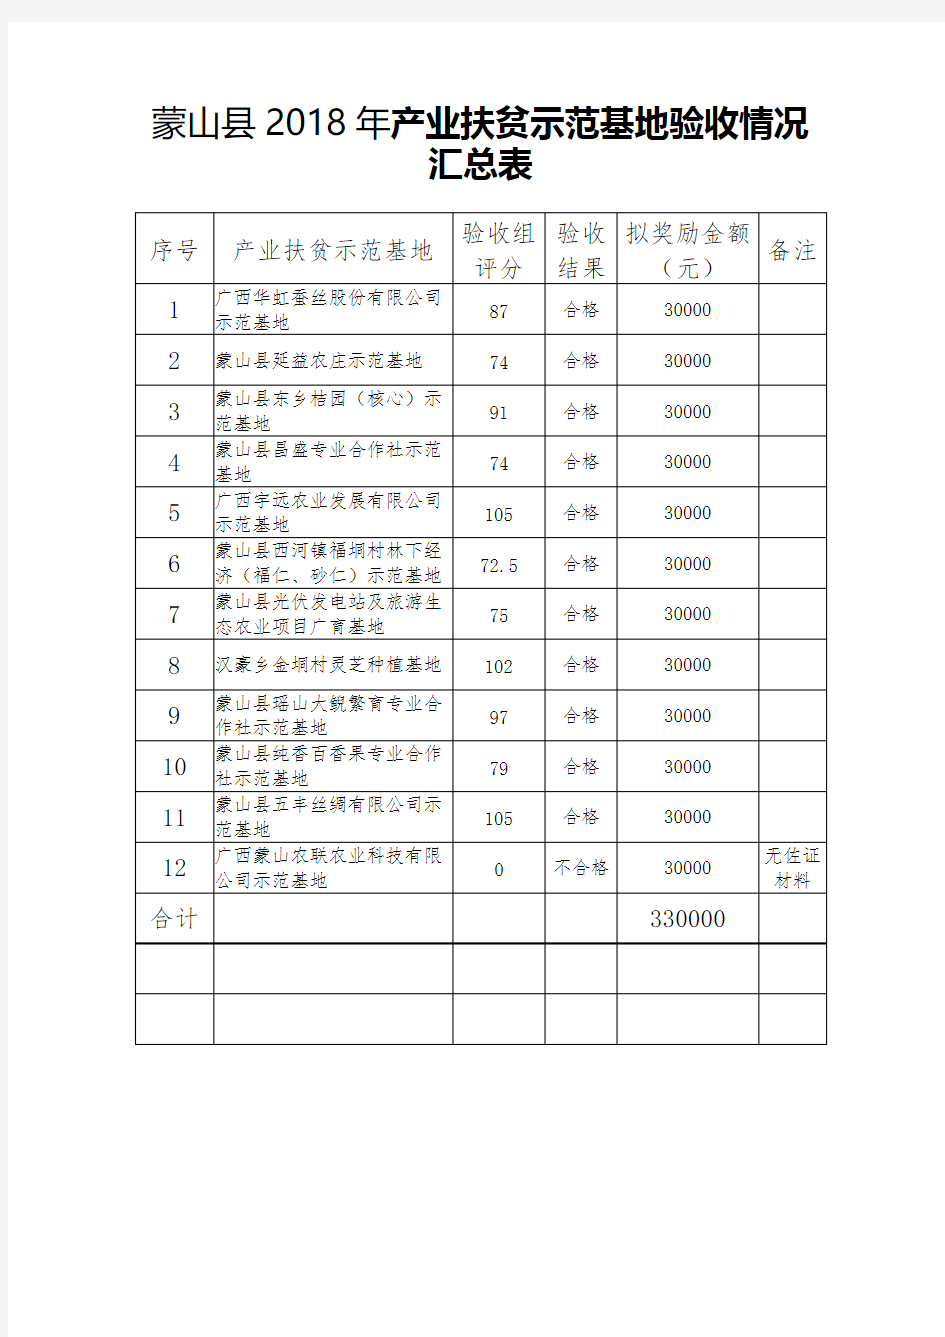 蒙山县2018年产业扶贫示范基地验收情况汇总表